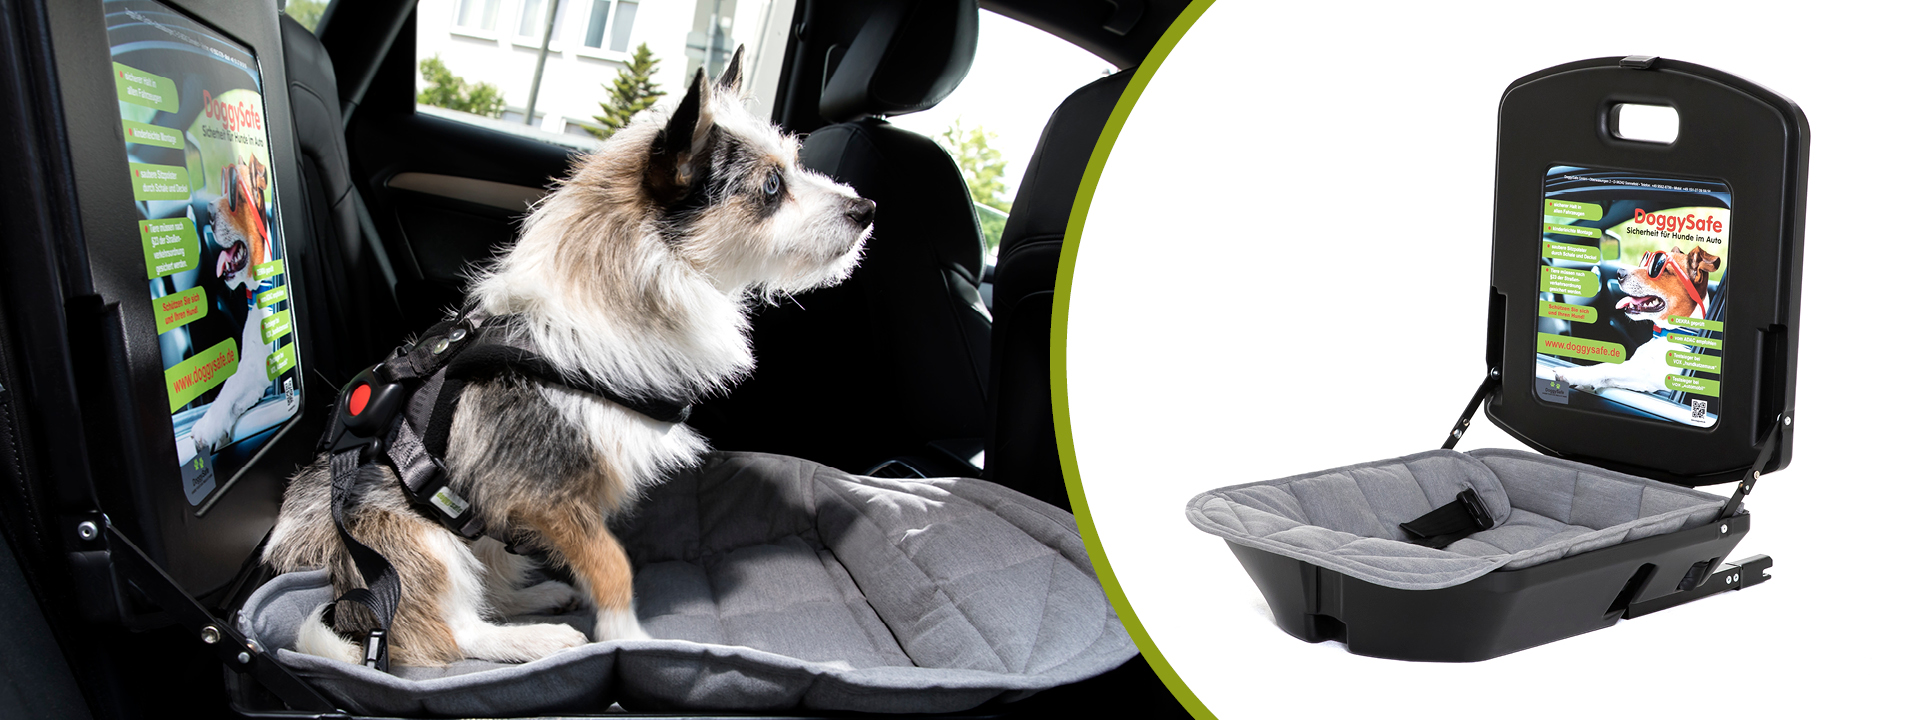 Der sichere Hundesitz im Auto für kleine Hunde DoggySafe